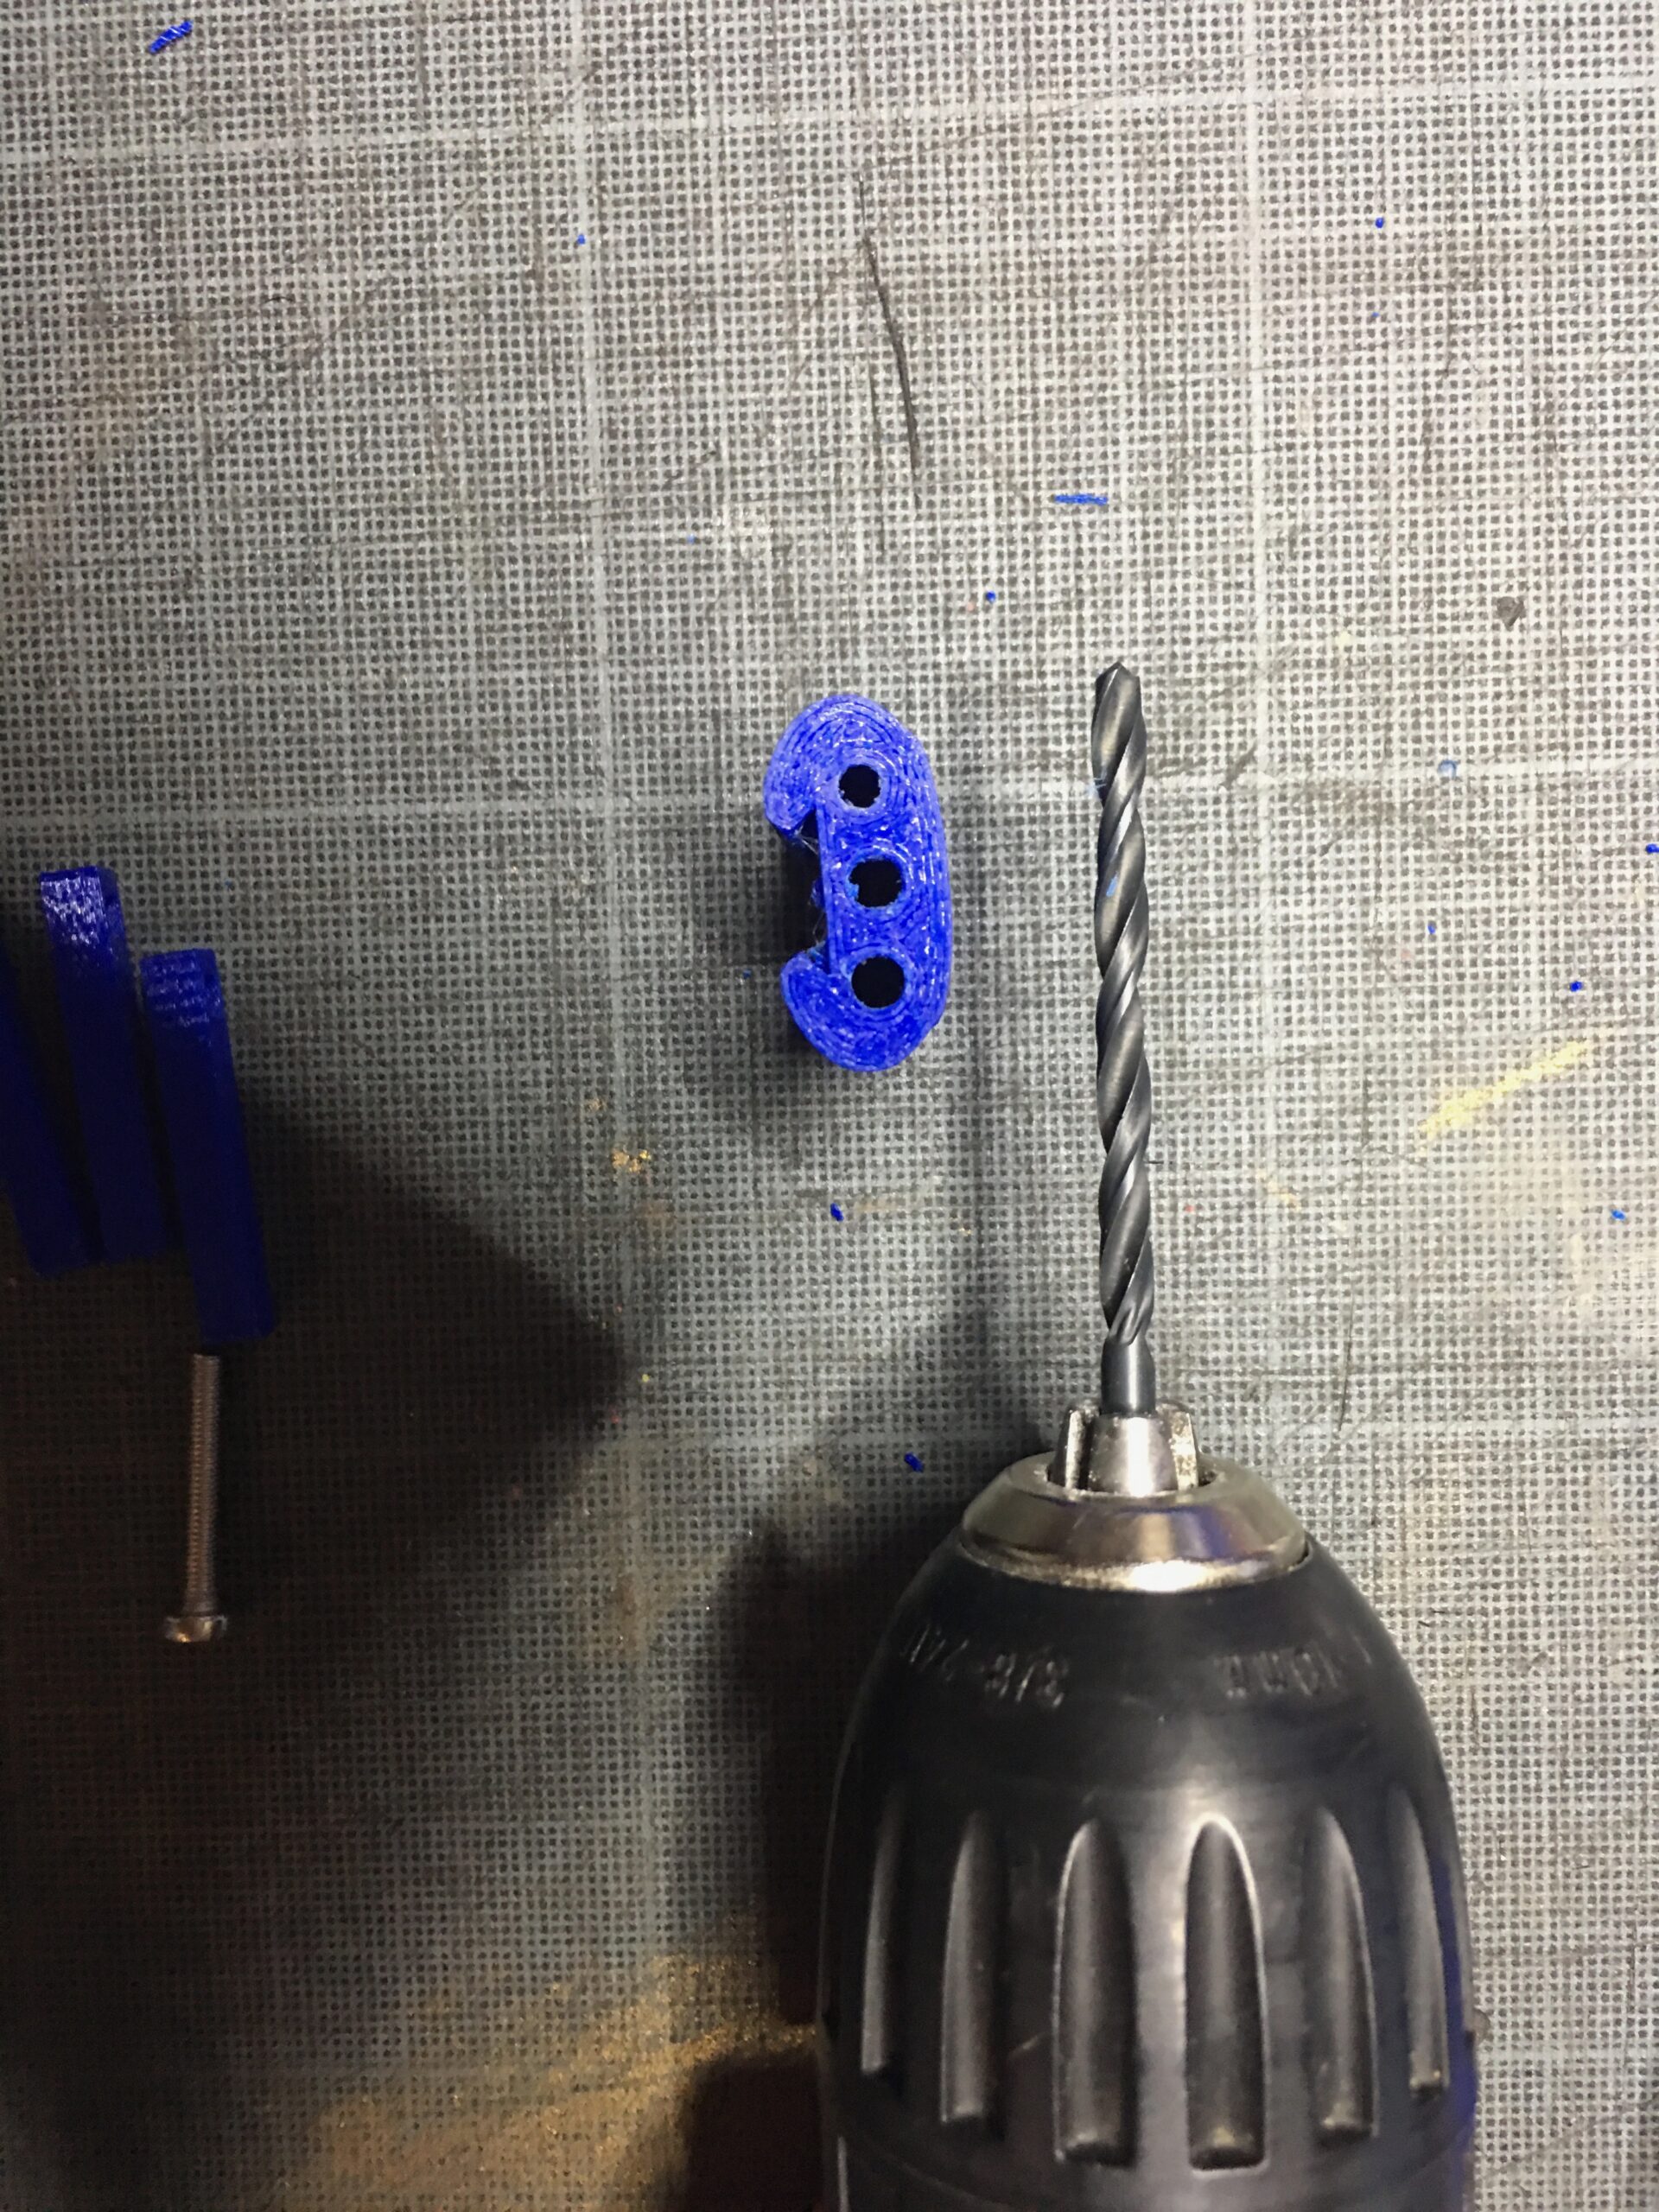 photo 2 du tensionneur à trois pins utilisé pour la fabrication de l'appareil e-Nable